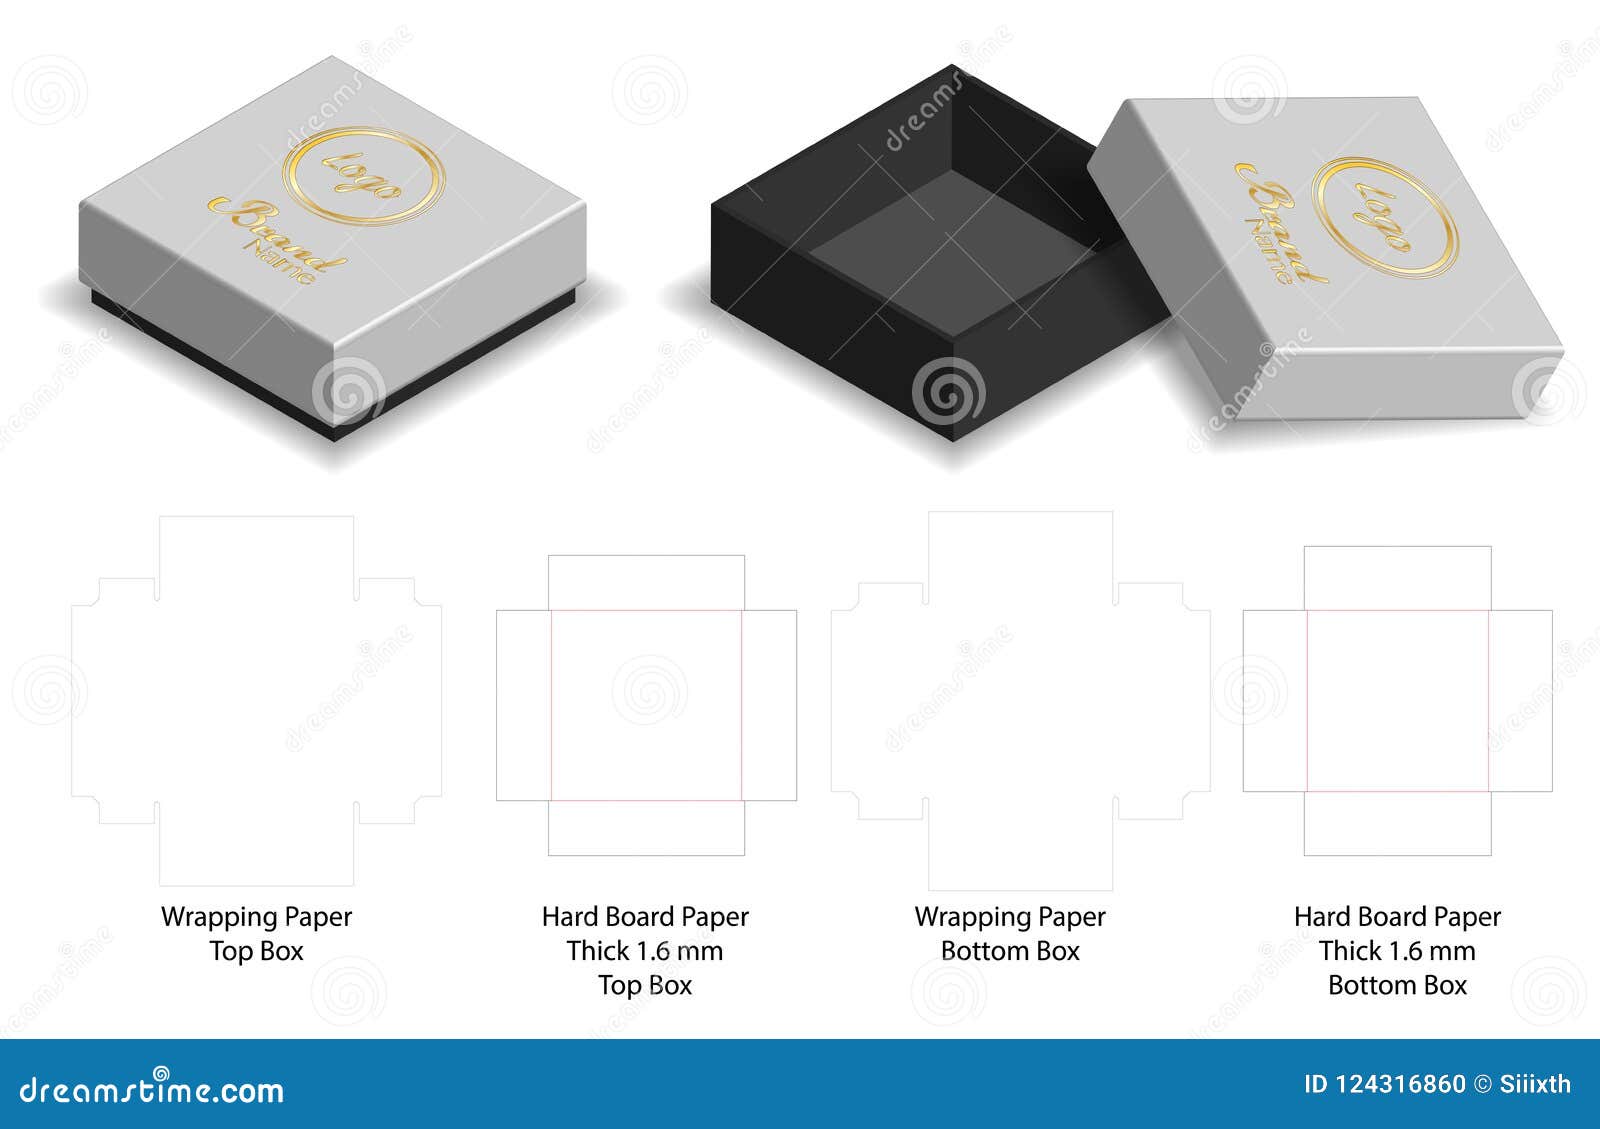 Игра открой коробку. Коробка с вырезом. Box Packaging die Cut Template Design. 3d Mock-up:. Rigid Box die Cut. Коробка с вырезом дизайн.